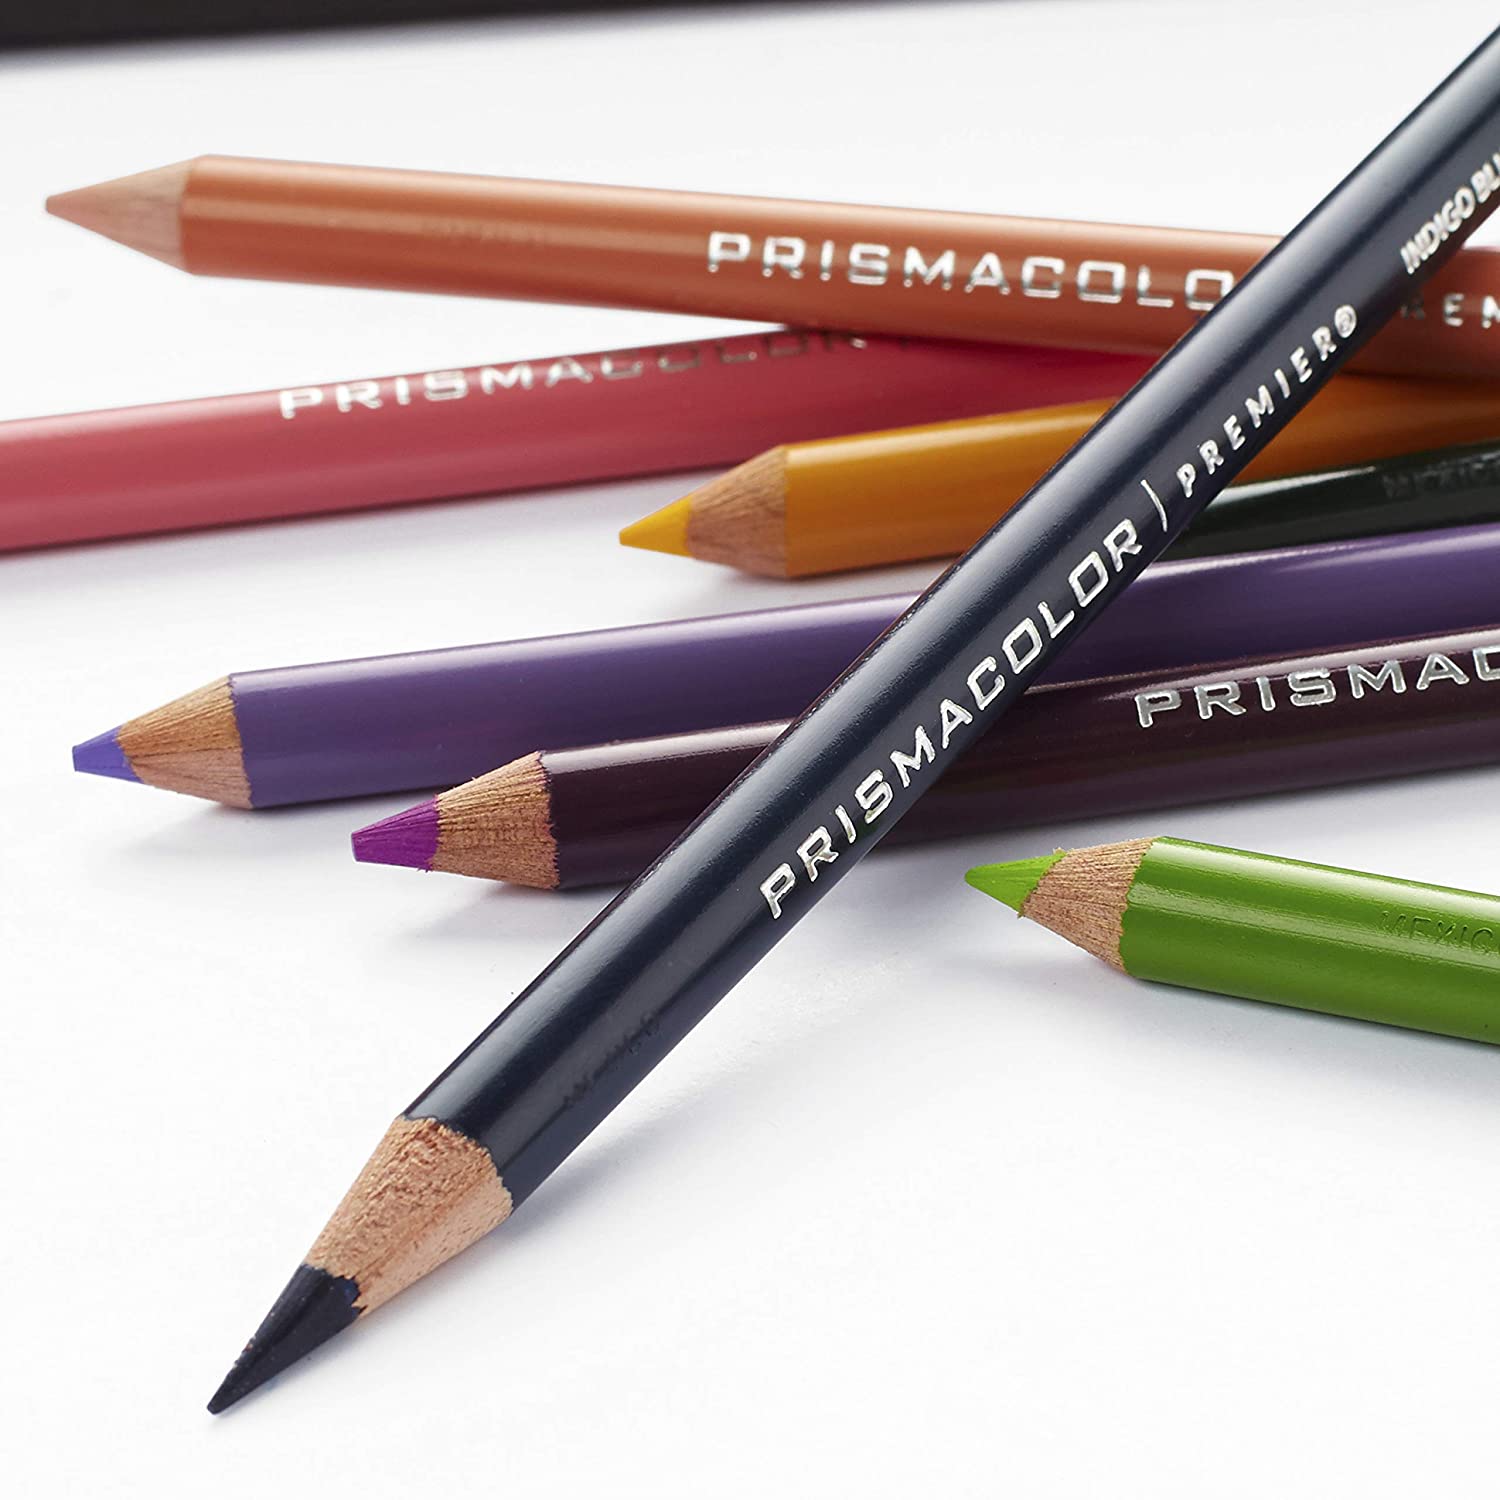 Prismacolor Premier Colored Pencil close up